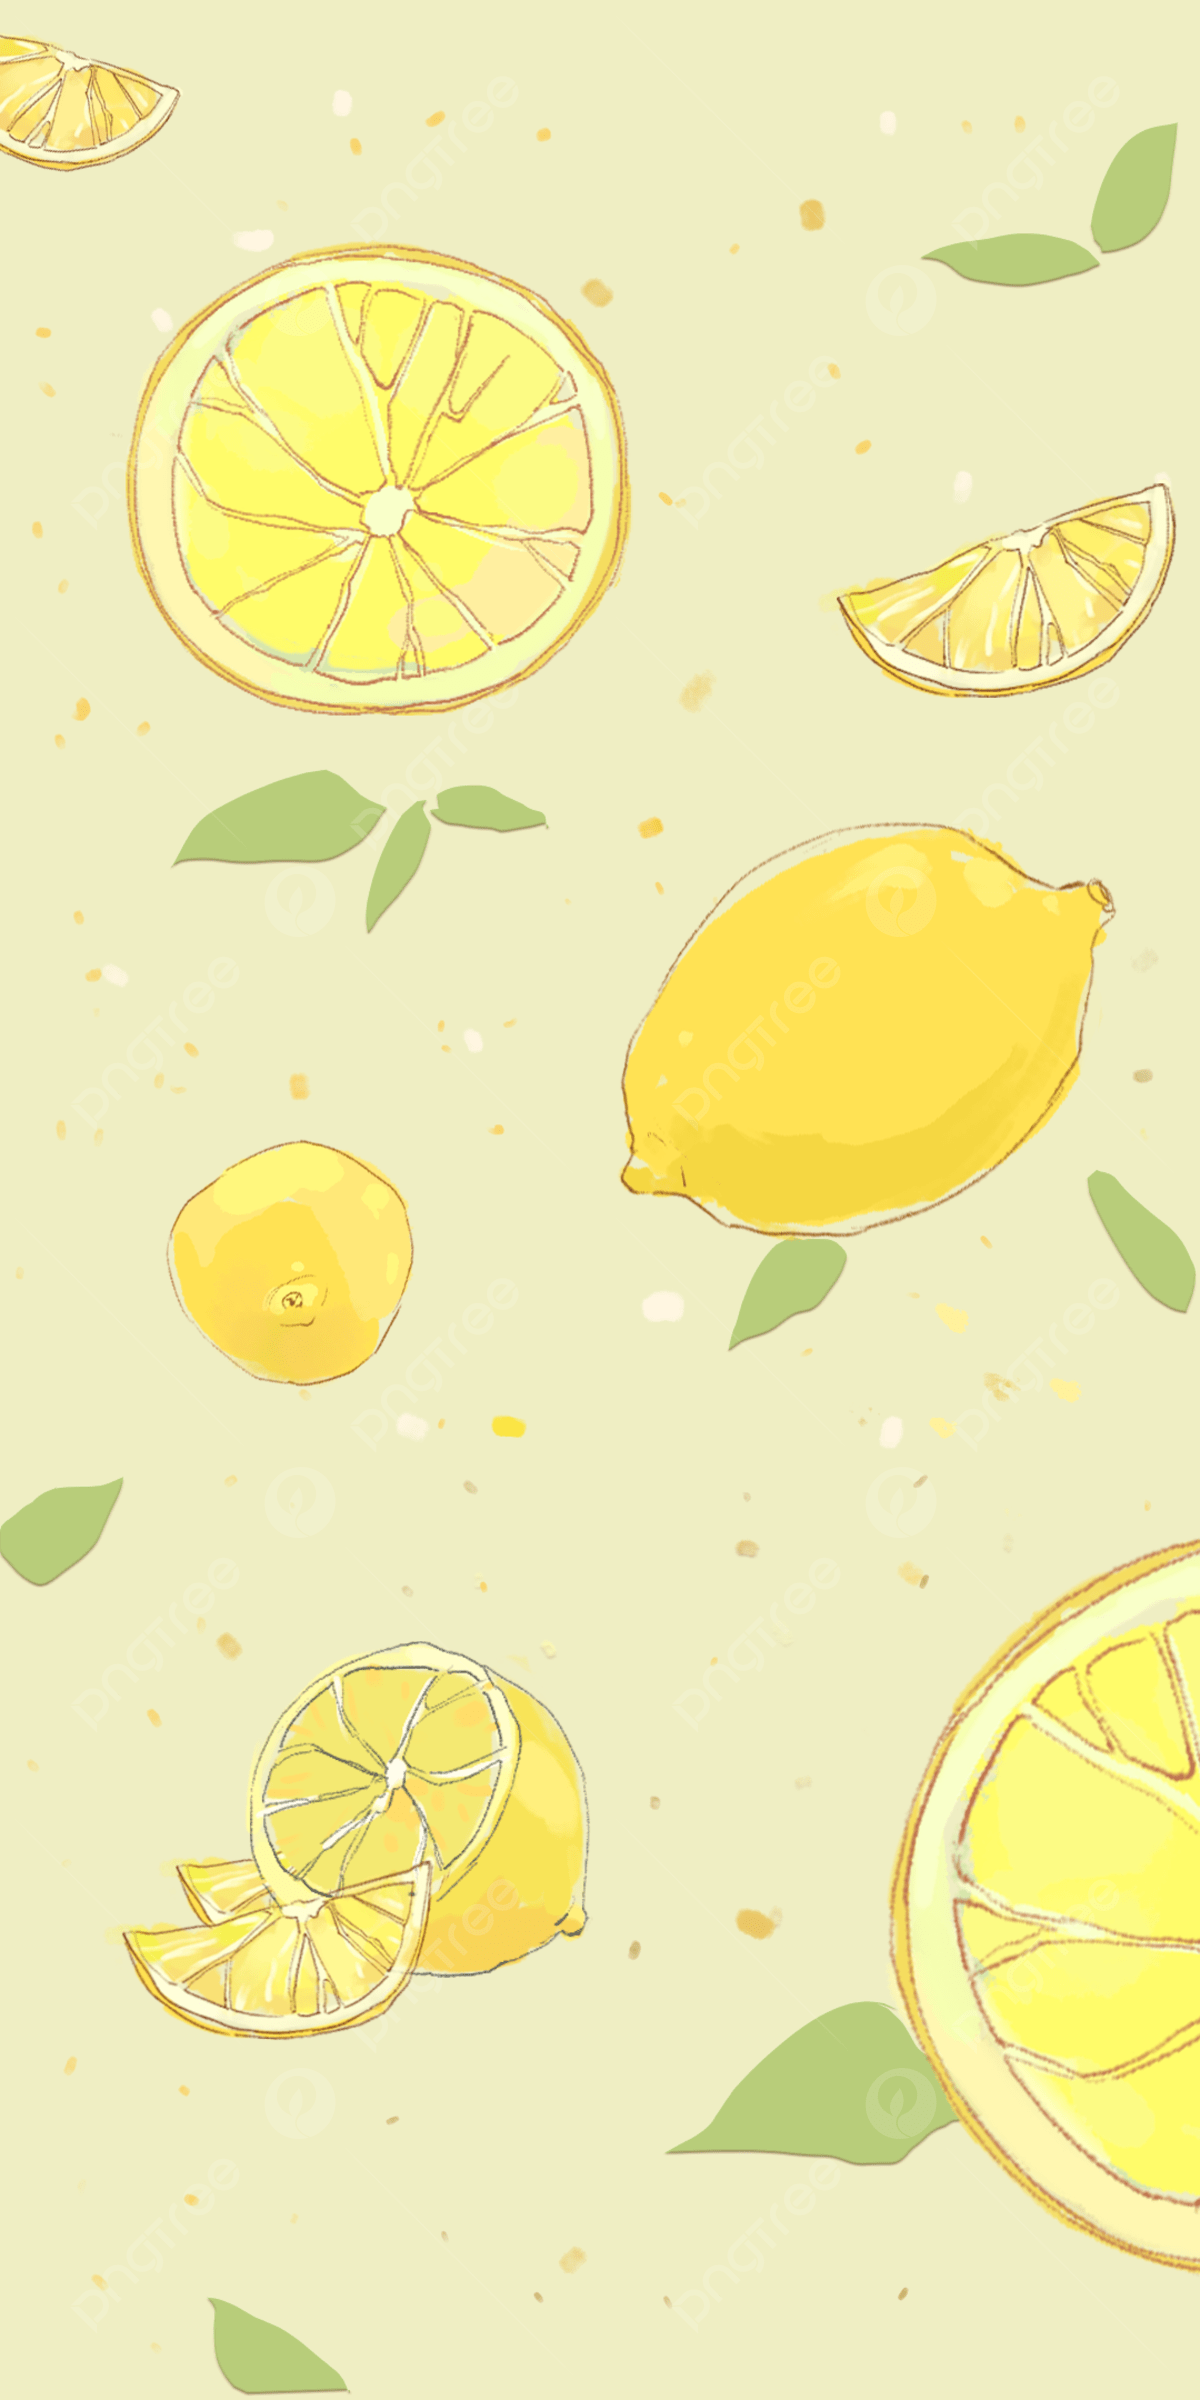 A wallpaper of a sliced lemon and whole lemon - Lemon